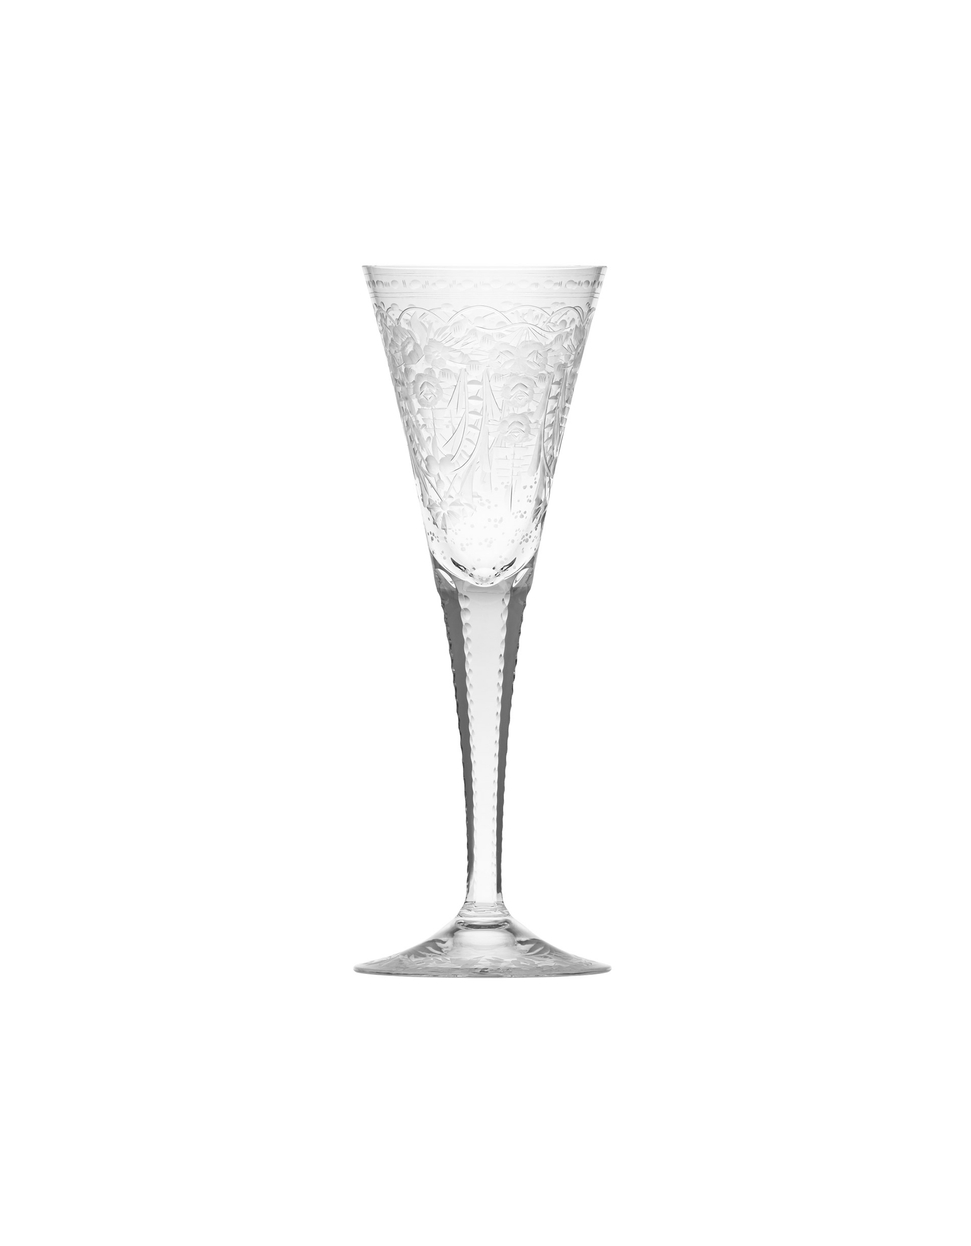 Maharani champagne glass, 160 ml